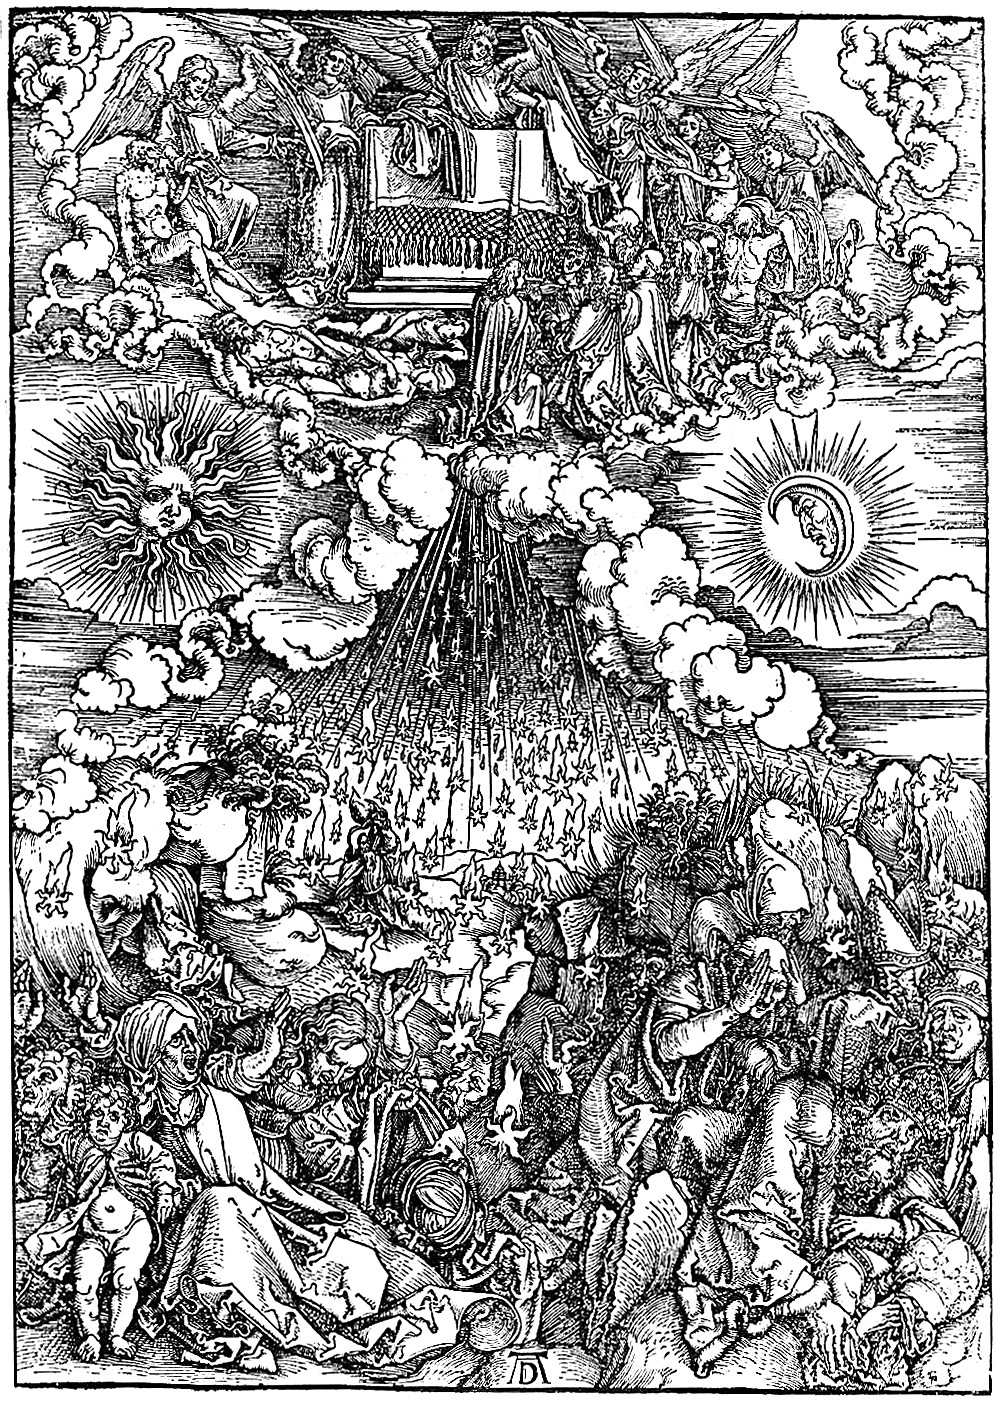 Альбрехт Дюрер. Гравюра "Снятие шестой печати" из серии "Апокалипсис" . Серия  гравюр на эту тему была закончены в 1498 году, когда Германия переживала апокалипсические настроения